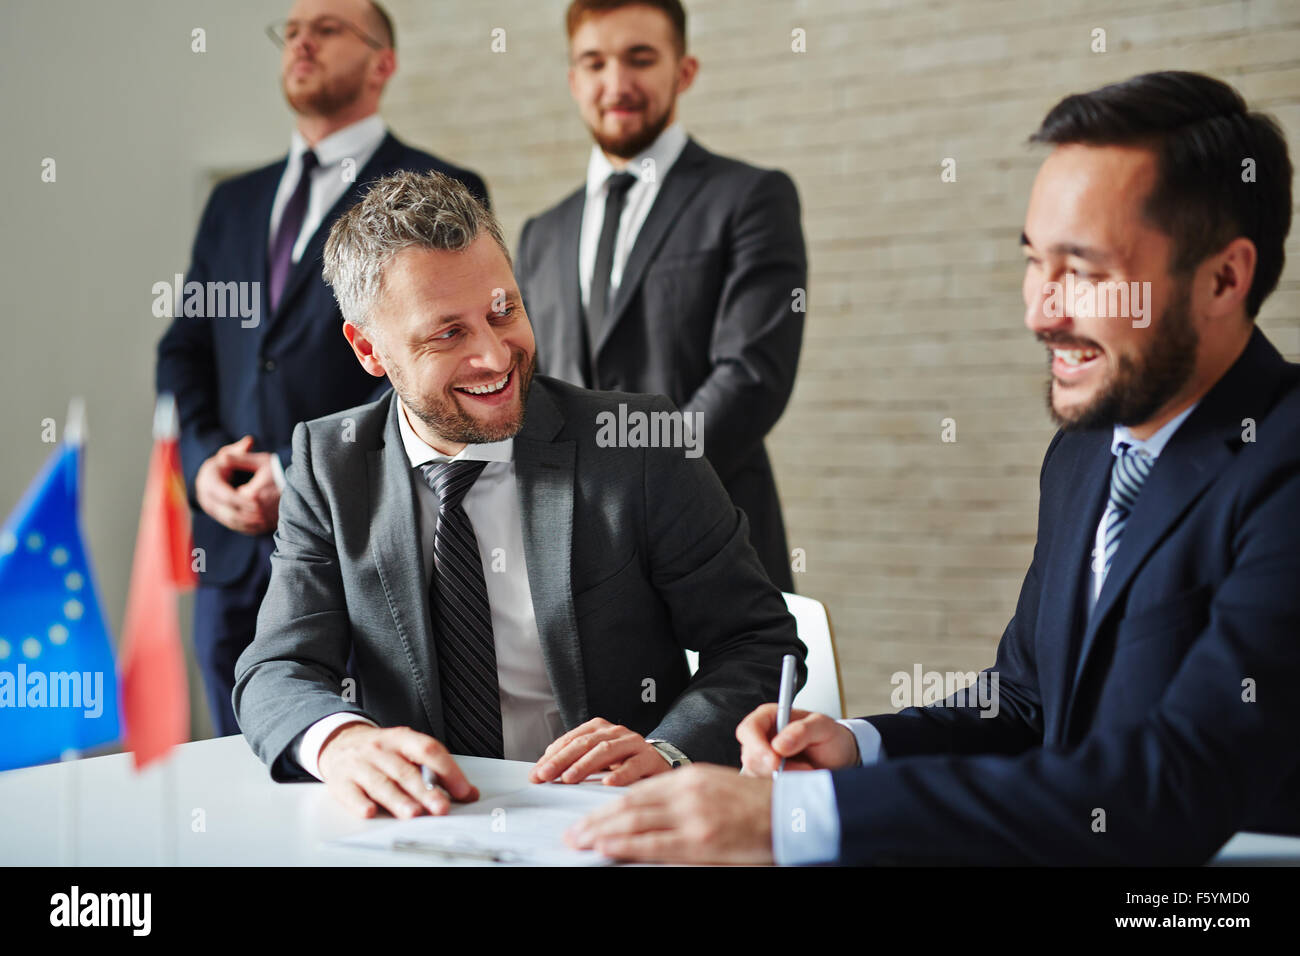 Fröhliche Geschäftsleute am Tisch sitzen und lachen während einer Besprechung Stockfoto